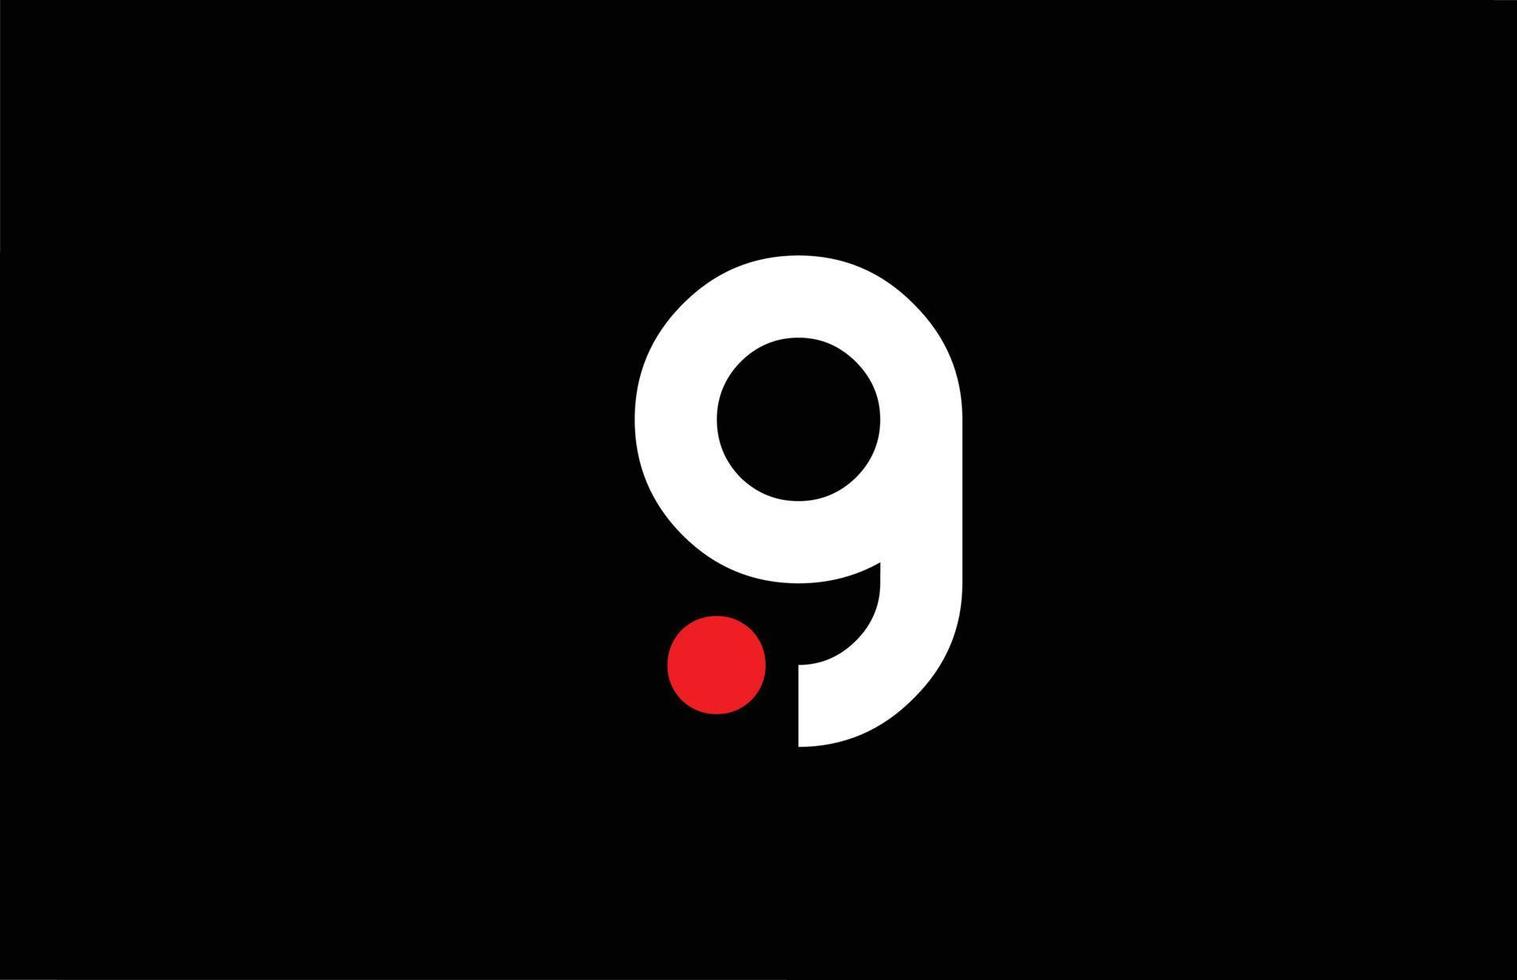 g-Alphabet-Buchstaben-Symbol-Logo-Design. kreative vorlage für unternehmen und business mit rotem punkt in weiß und schwarz vektor